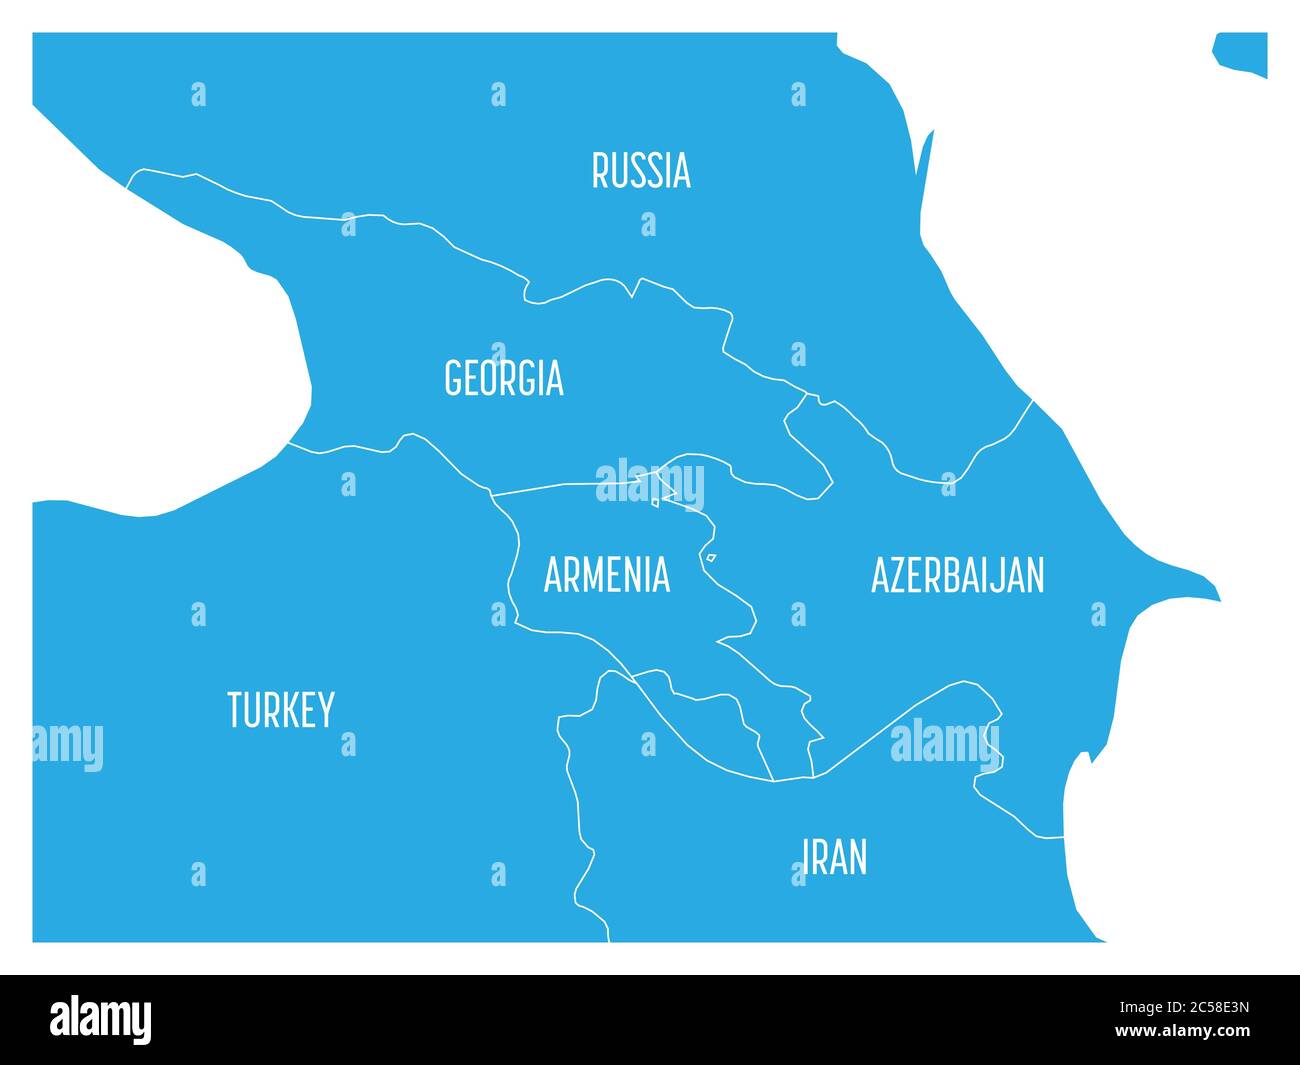 Mappa della regione caucasica con gli stati di Georgia, Armenia, Azerbaigian, Russia Turchia e Iran. Mappa blu piatta con confini e etichette bianche. Illustrazione Vettoriale